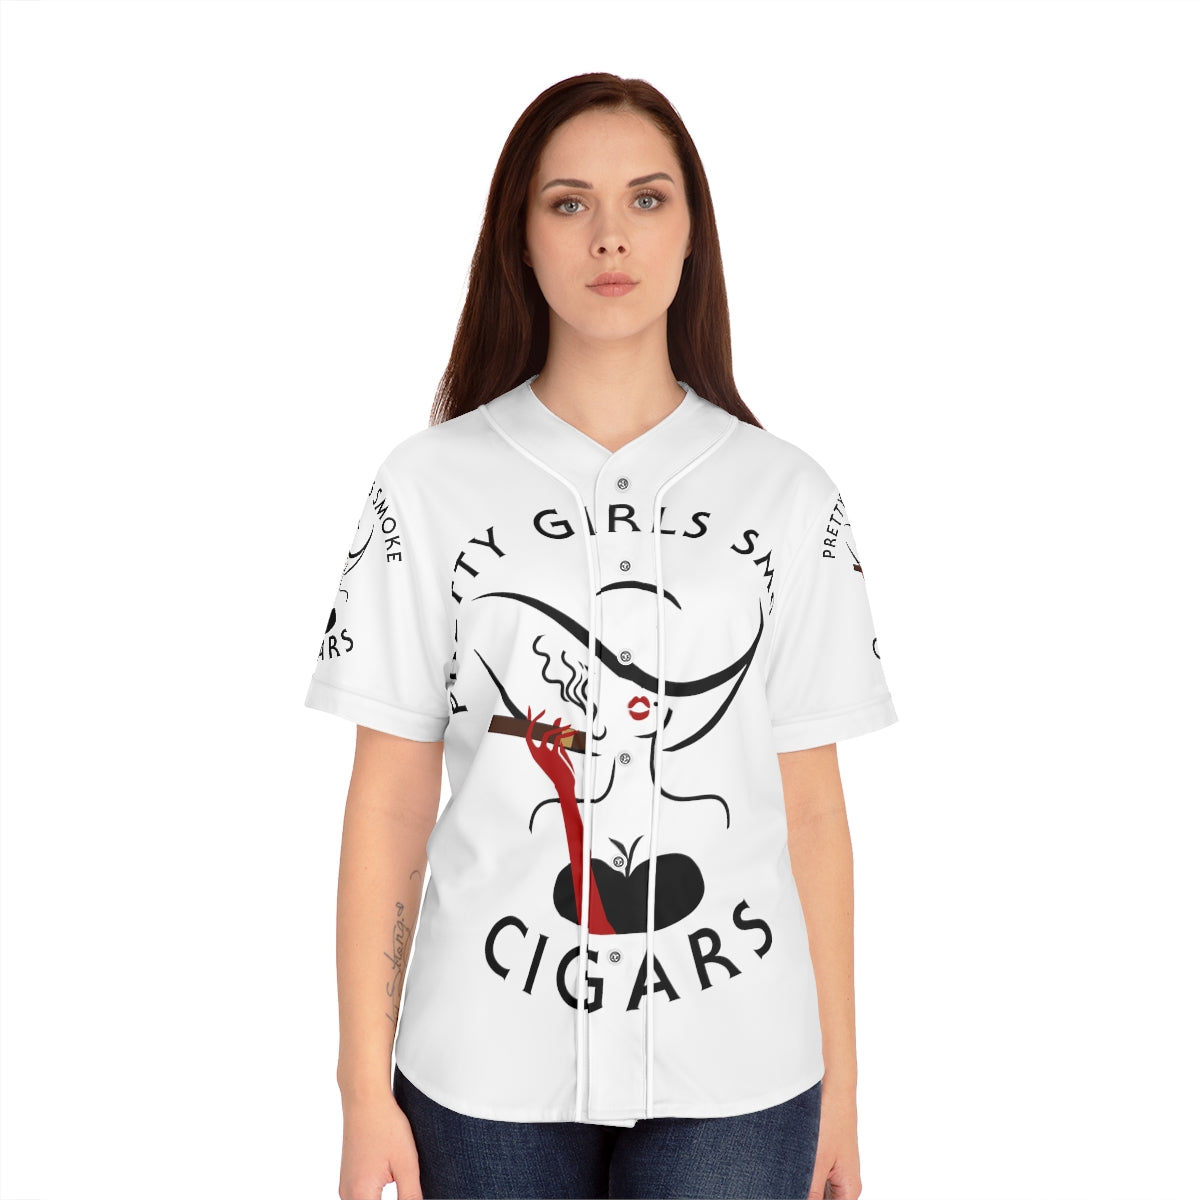 Pretty Girls Smoke Cigars Baseball Jersey